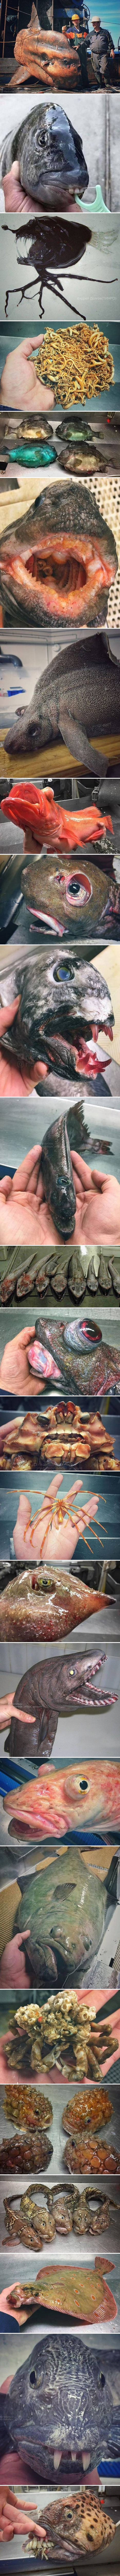 Ovo su definitivno najstrašnija stvorenja koja su ljudi ikad izvukli iz svjetskih mora i oceana